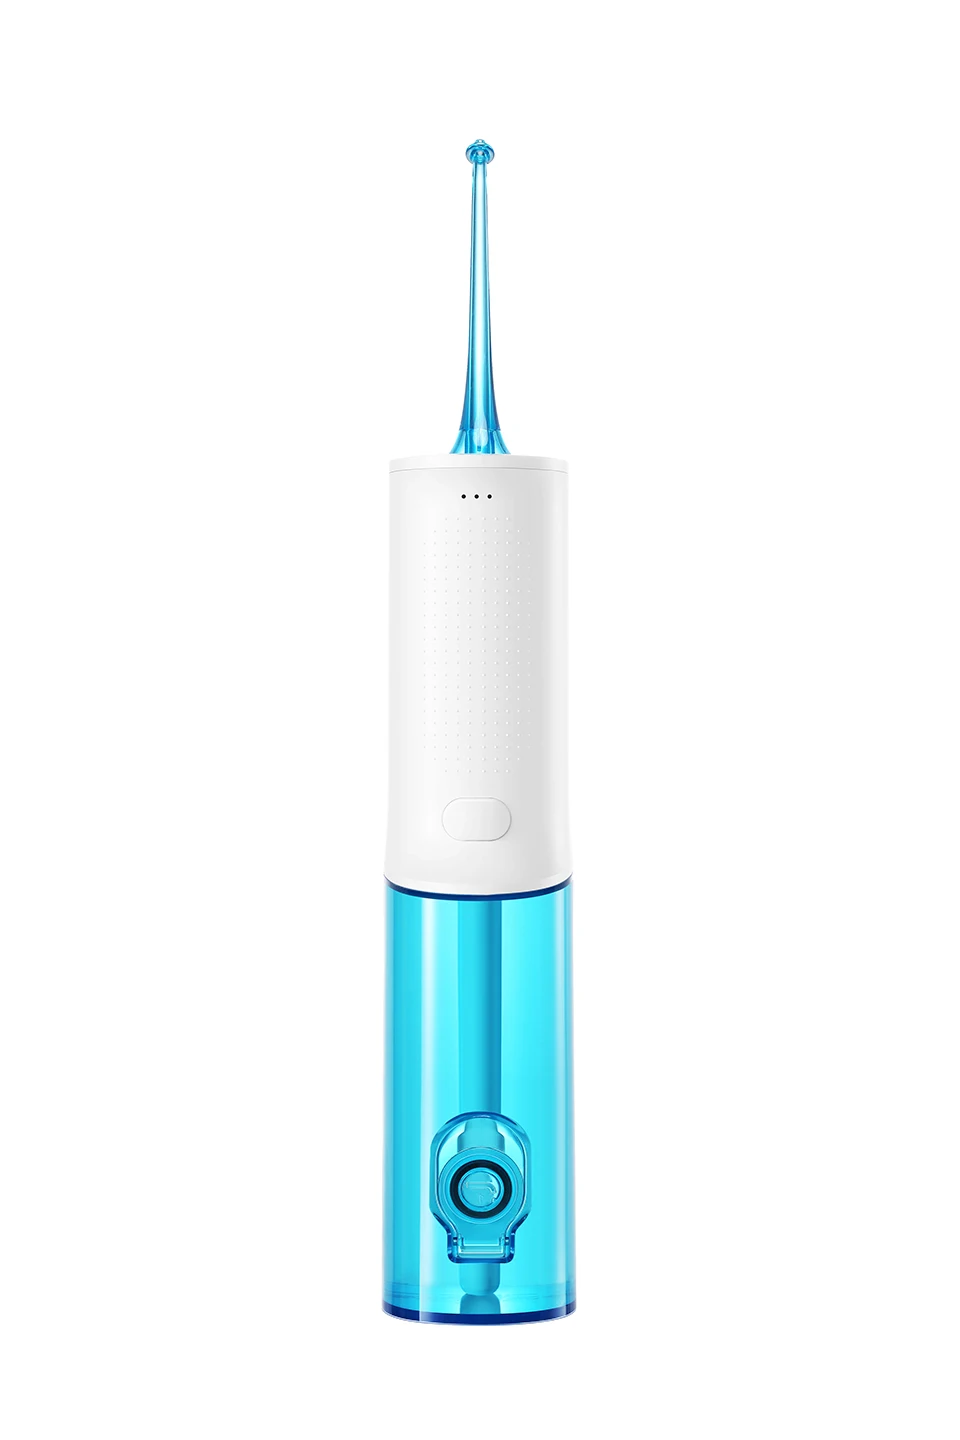 SOOCAS W3 портативный ирригатор для полости рта USB Перезаряжаемый водный зубной Флоссер 2200mAh ирригатор для чистки зубов Водоструйная зубочистка